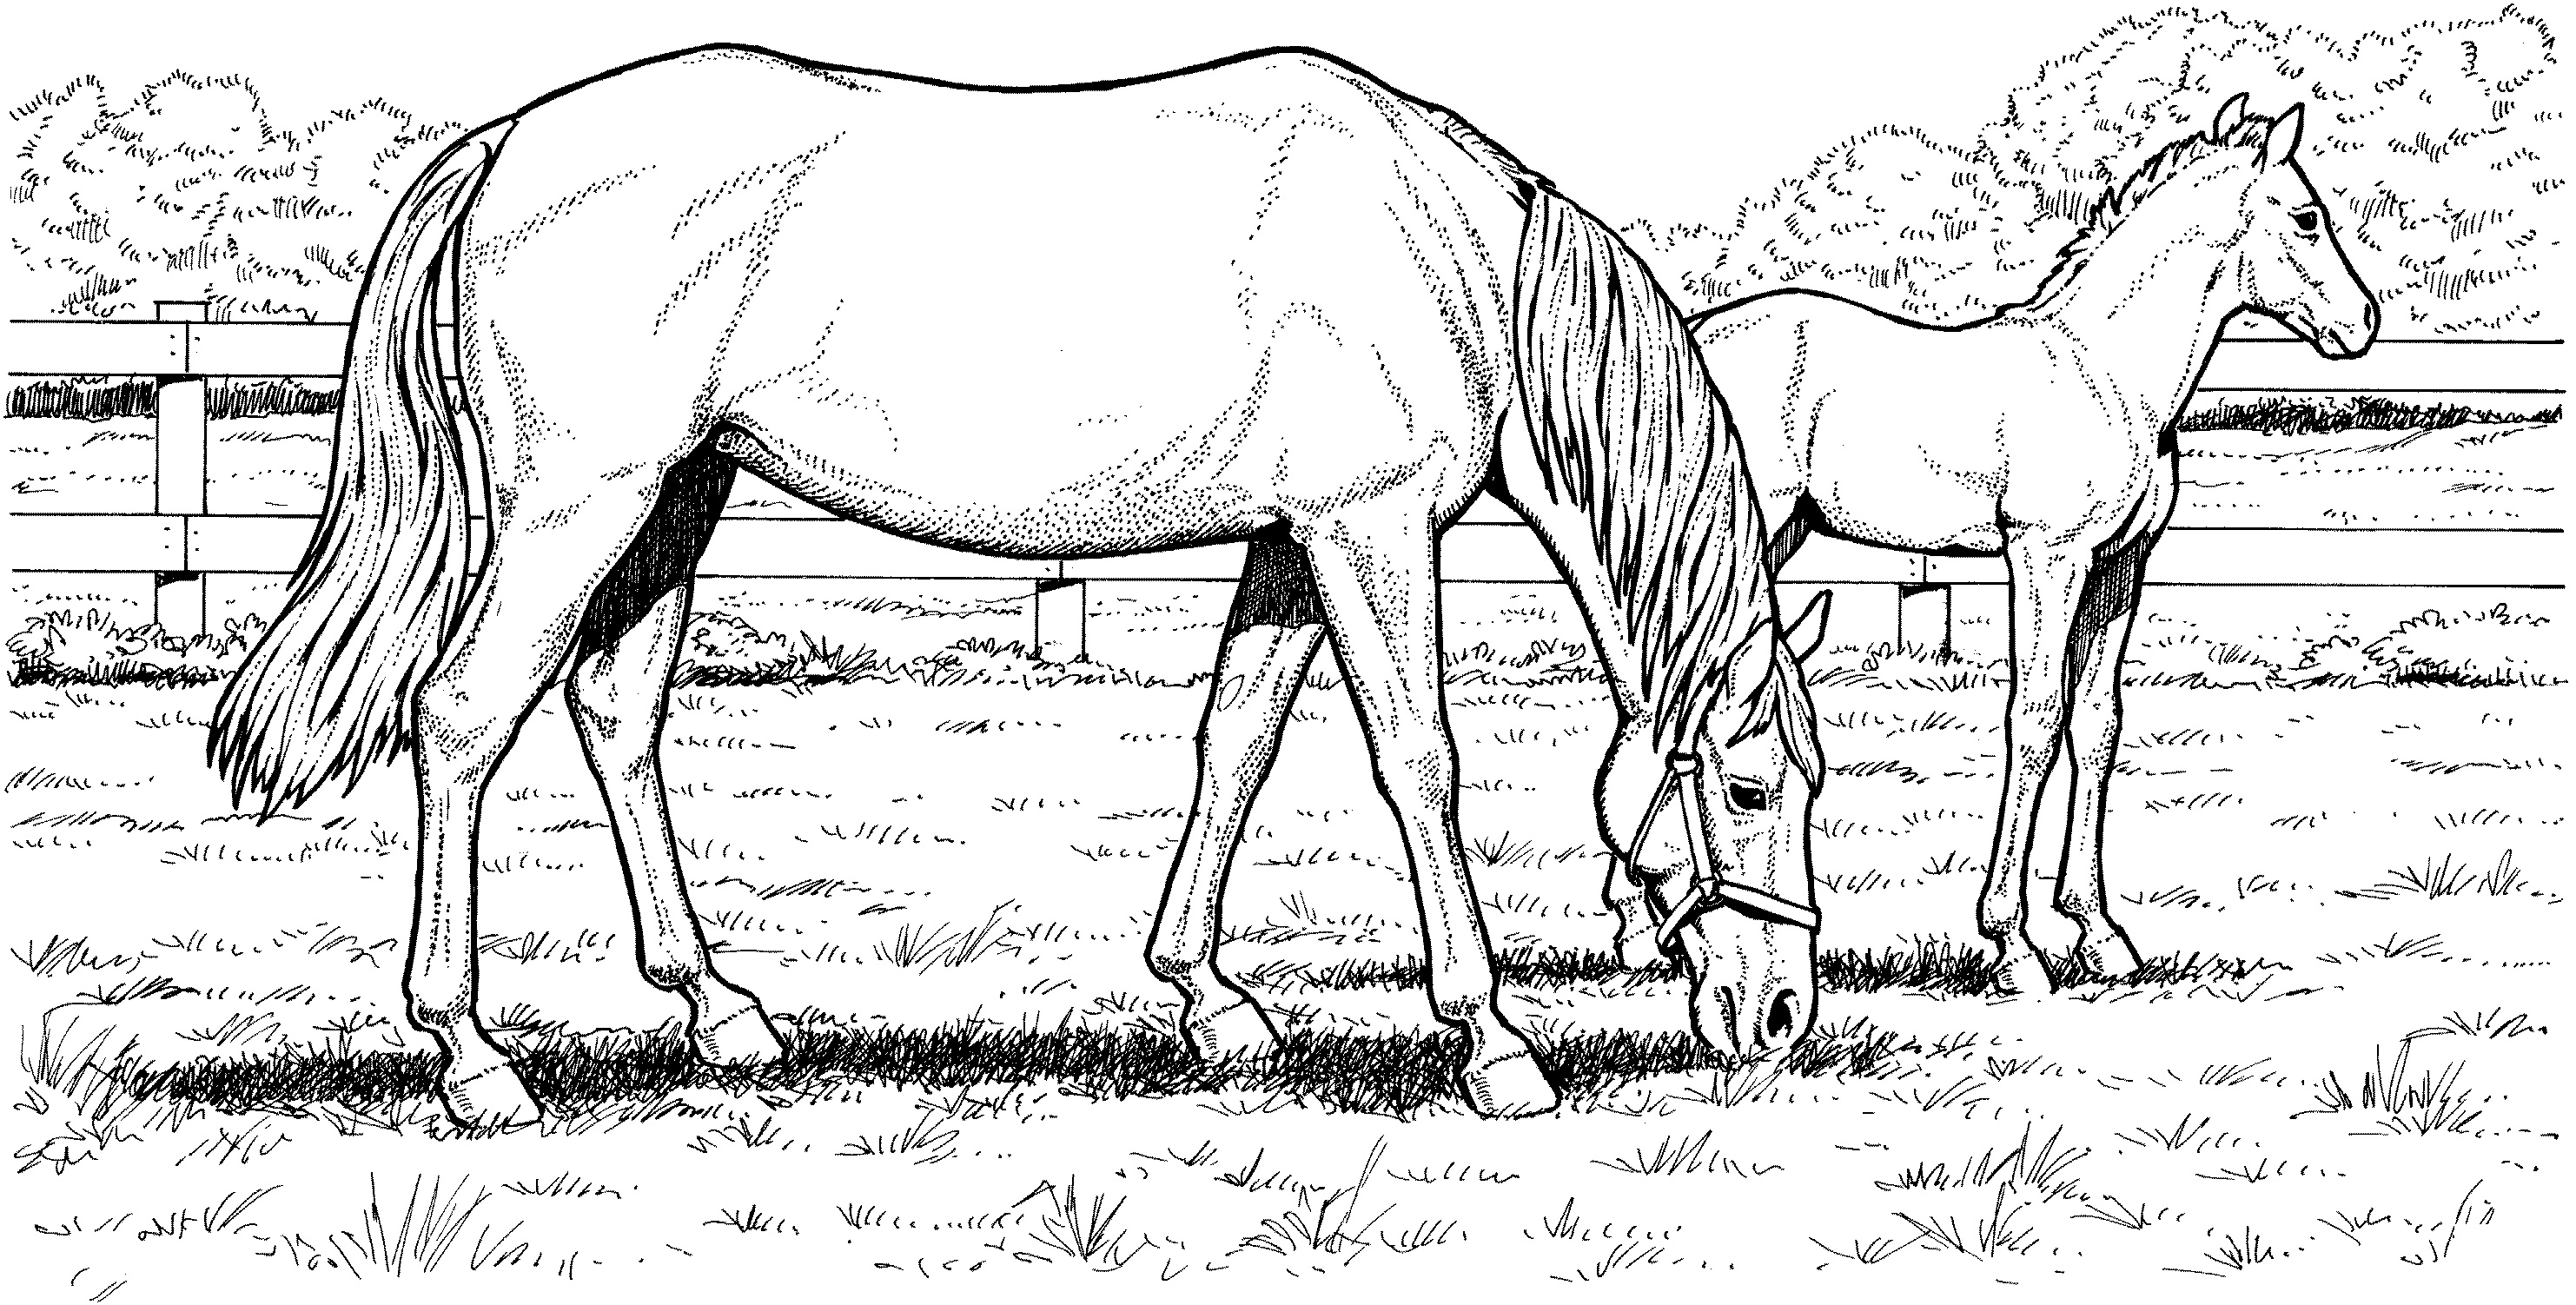 Картинка лошадь раскраска